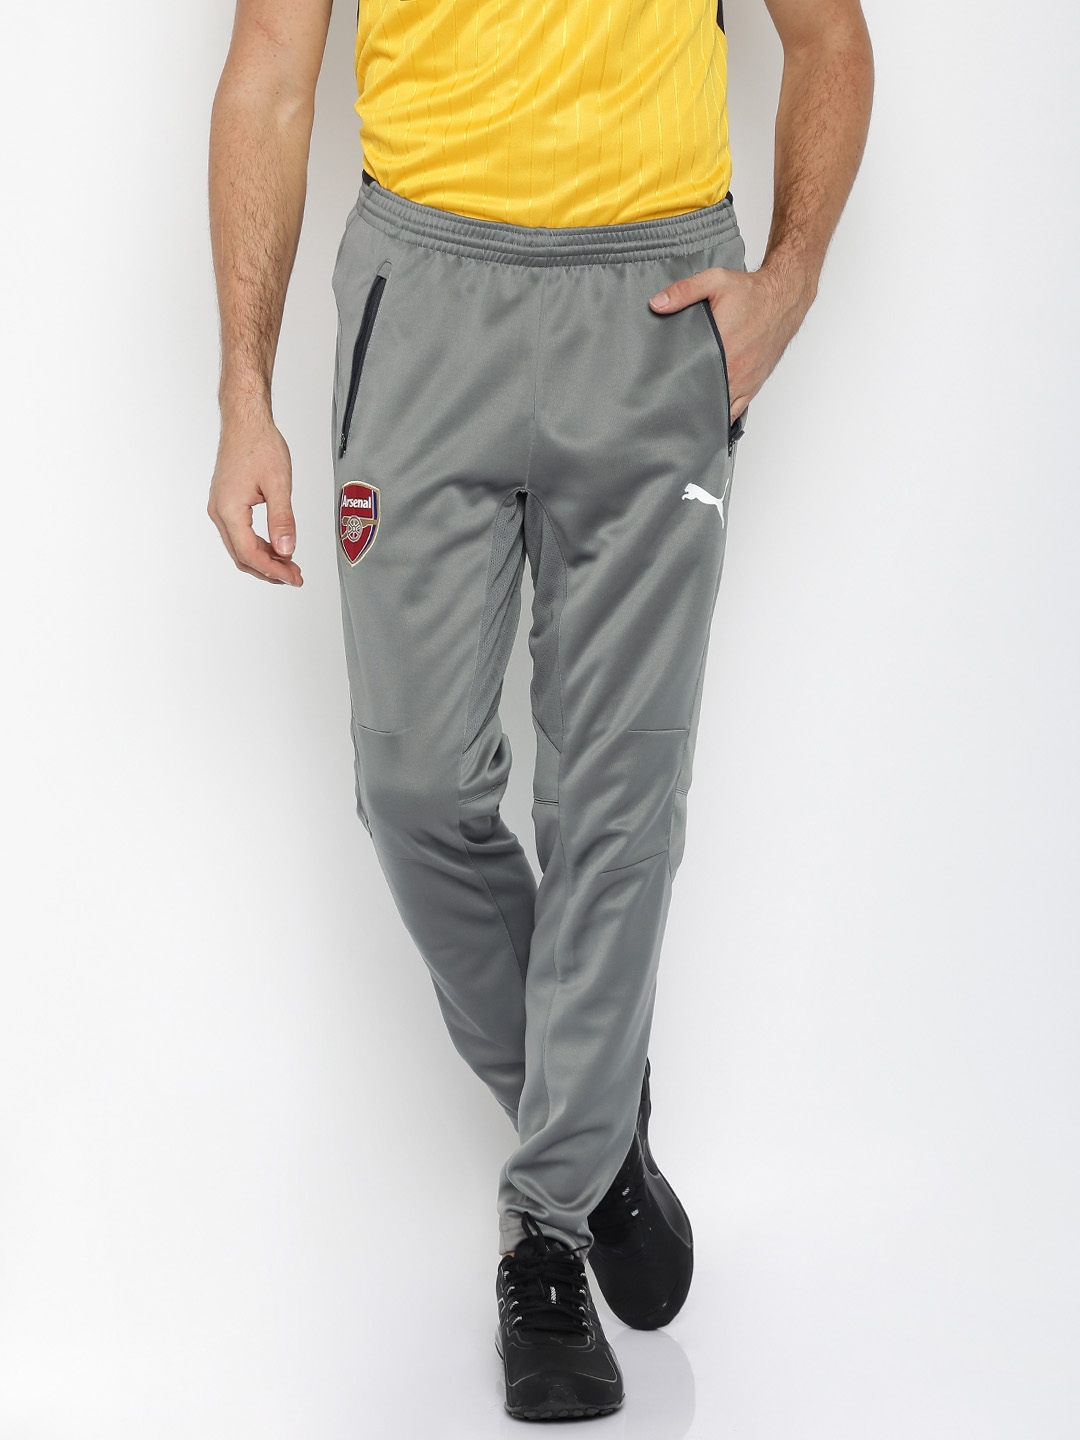 Keer terug Redenaar Vriendelijkheid Buy PUMA Grey Arsenal DryCELL Football Track Pants - Track Pants for Men  1489403 | Myntra